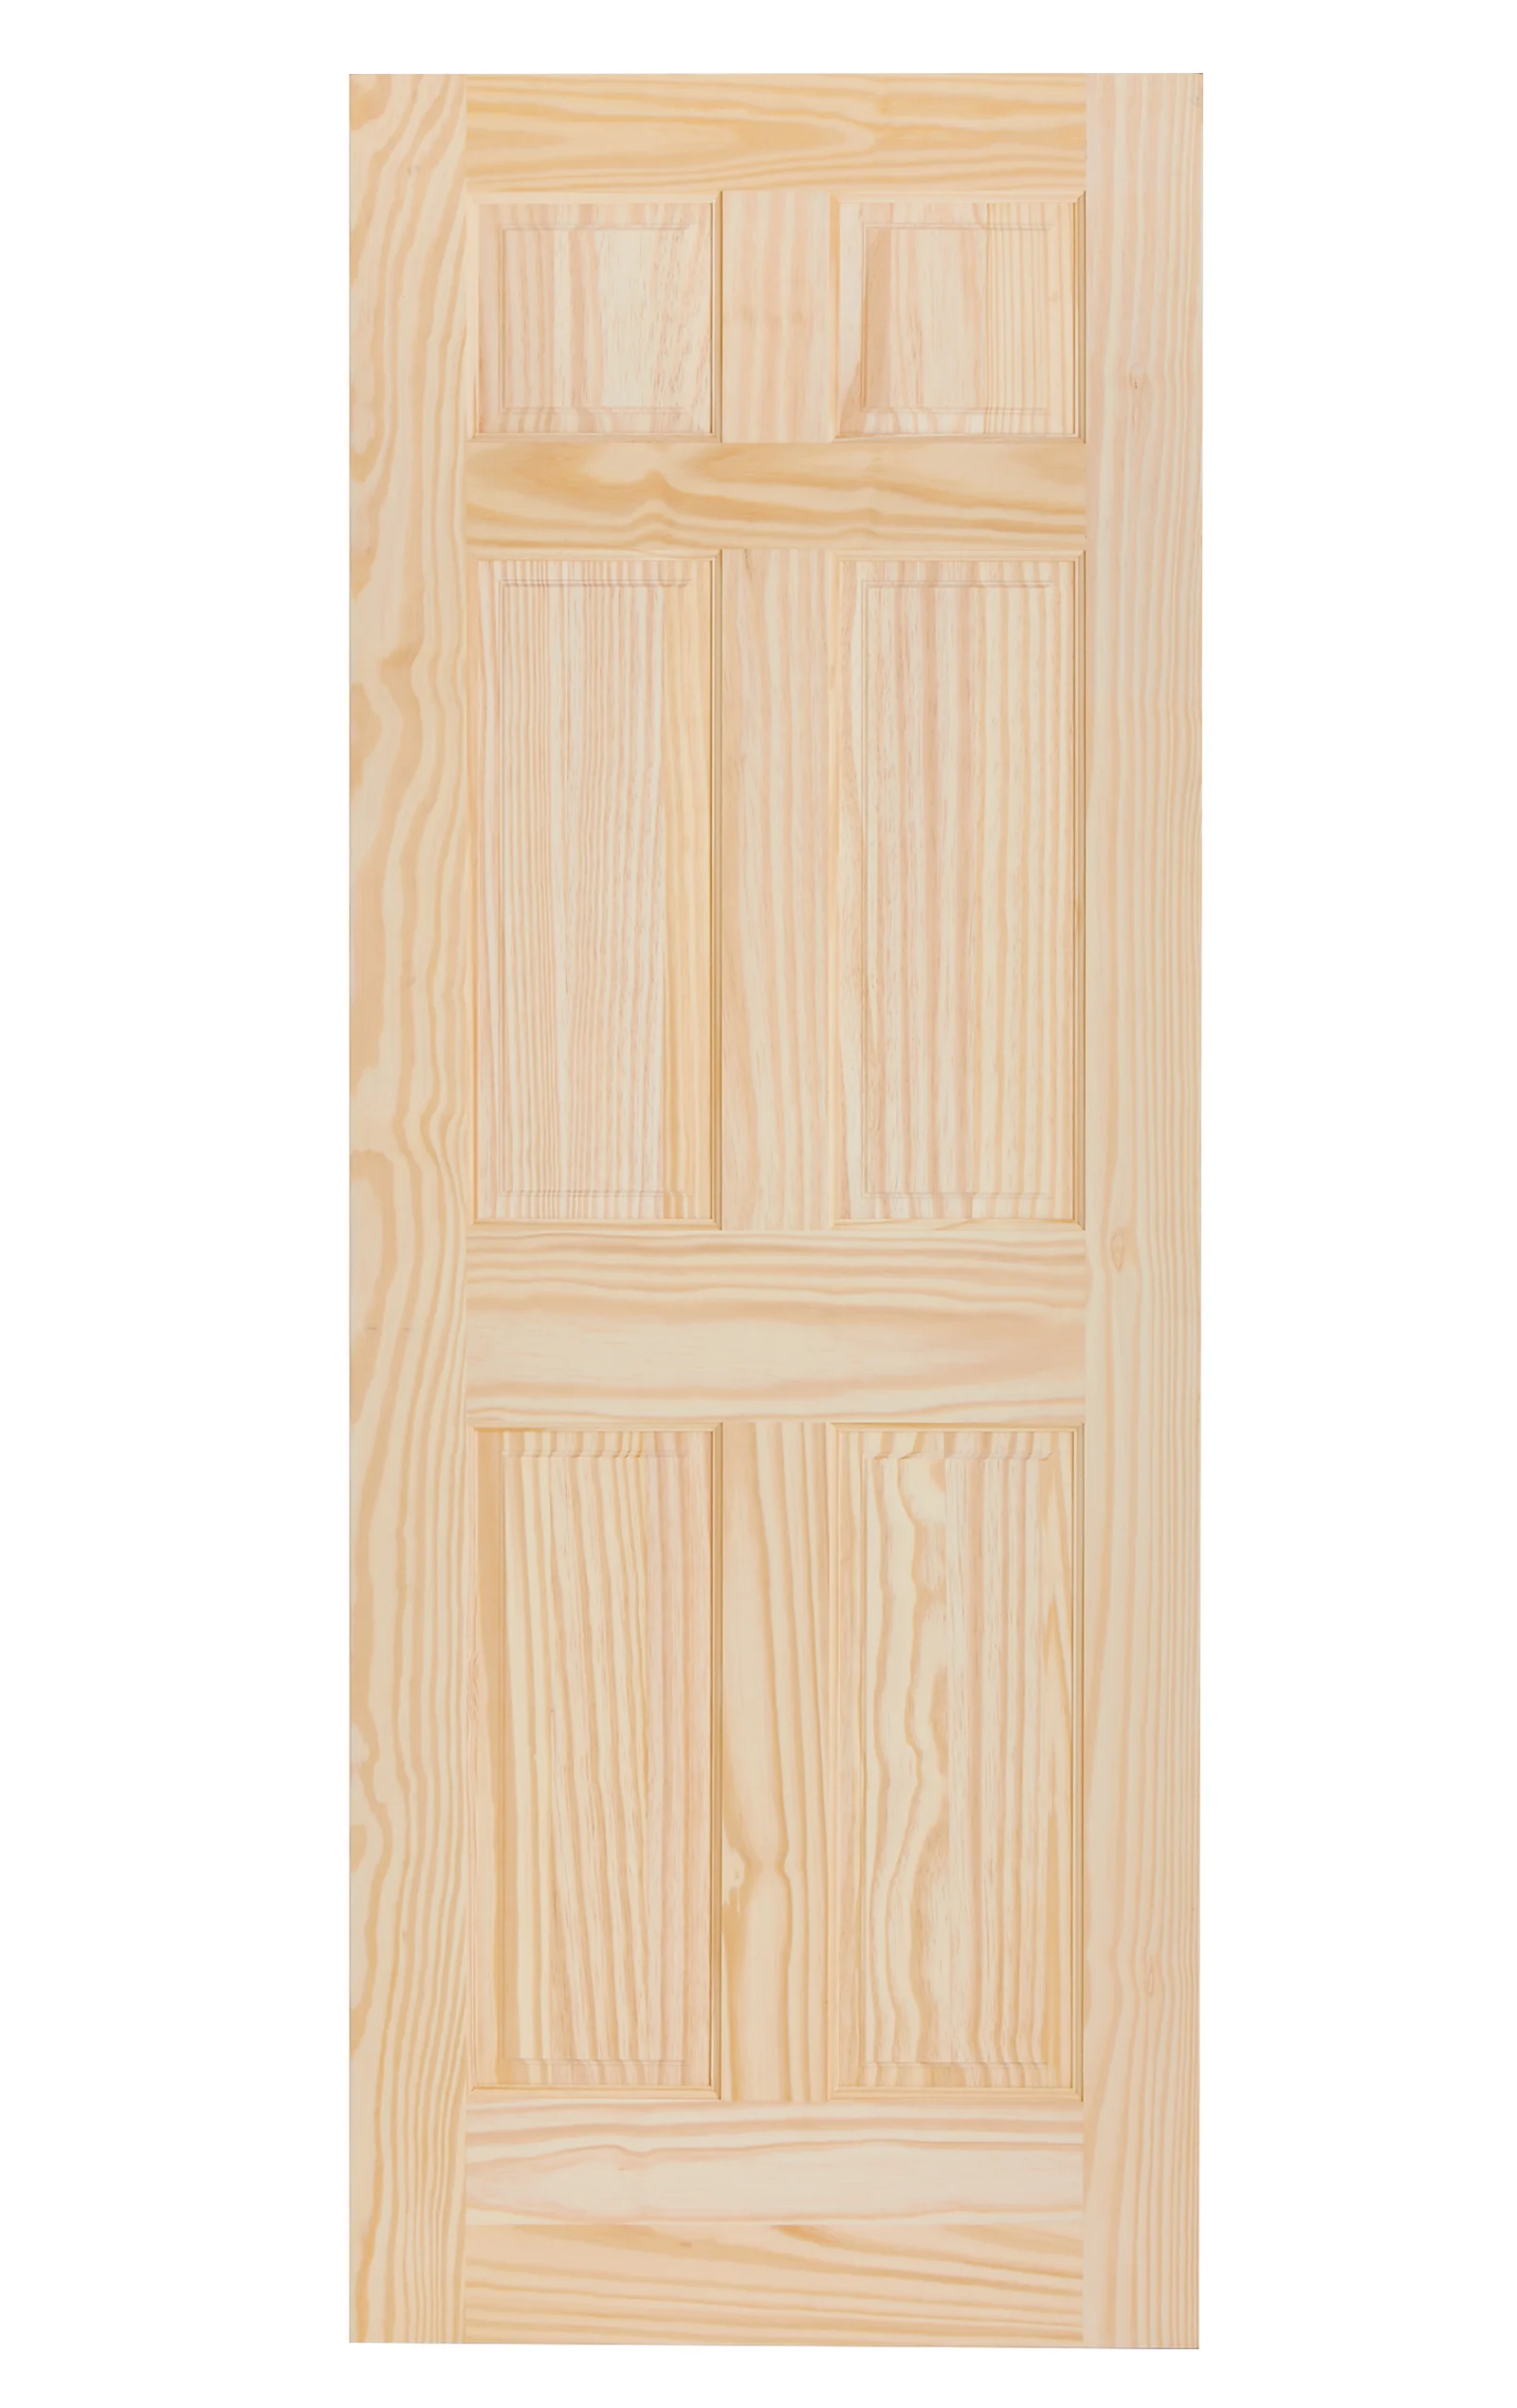 minimalist wooden door